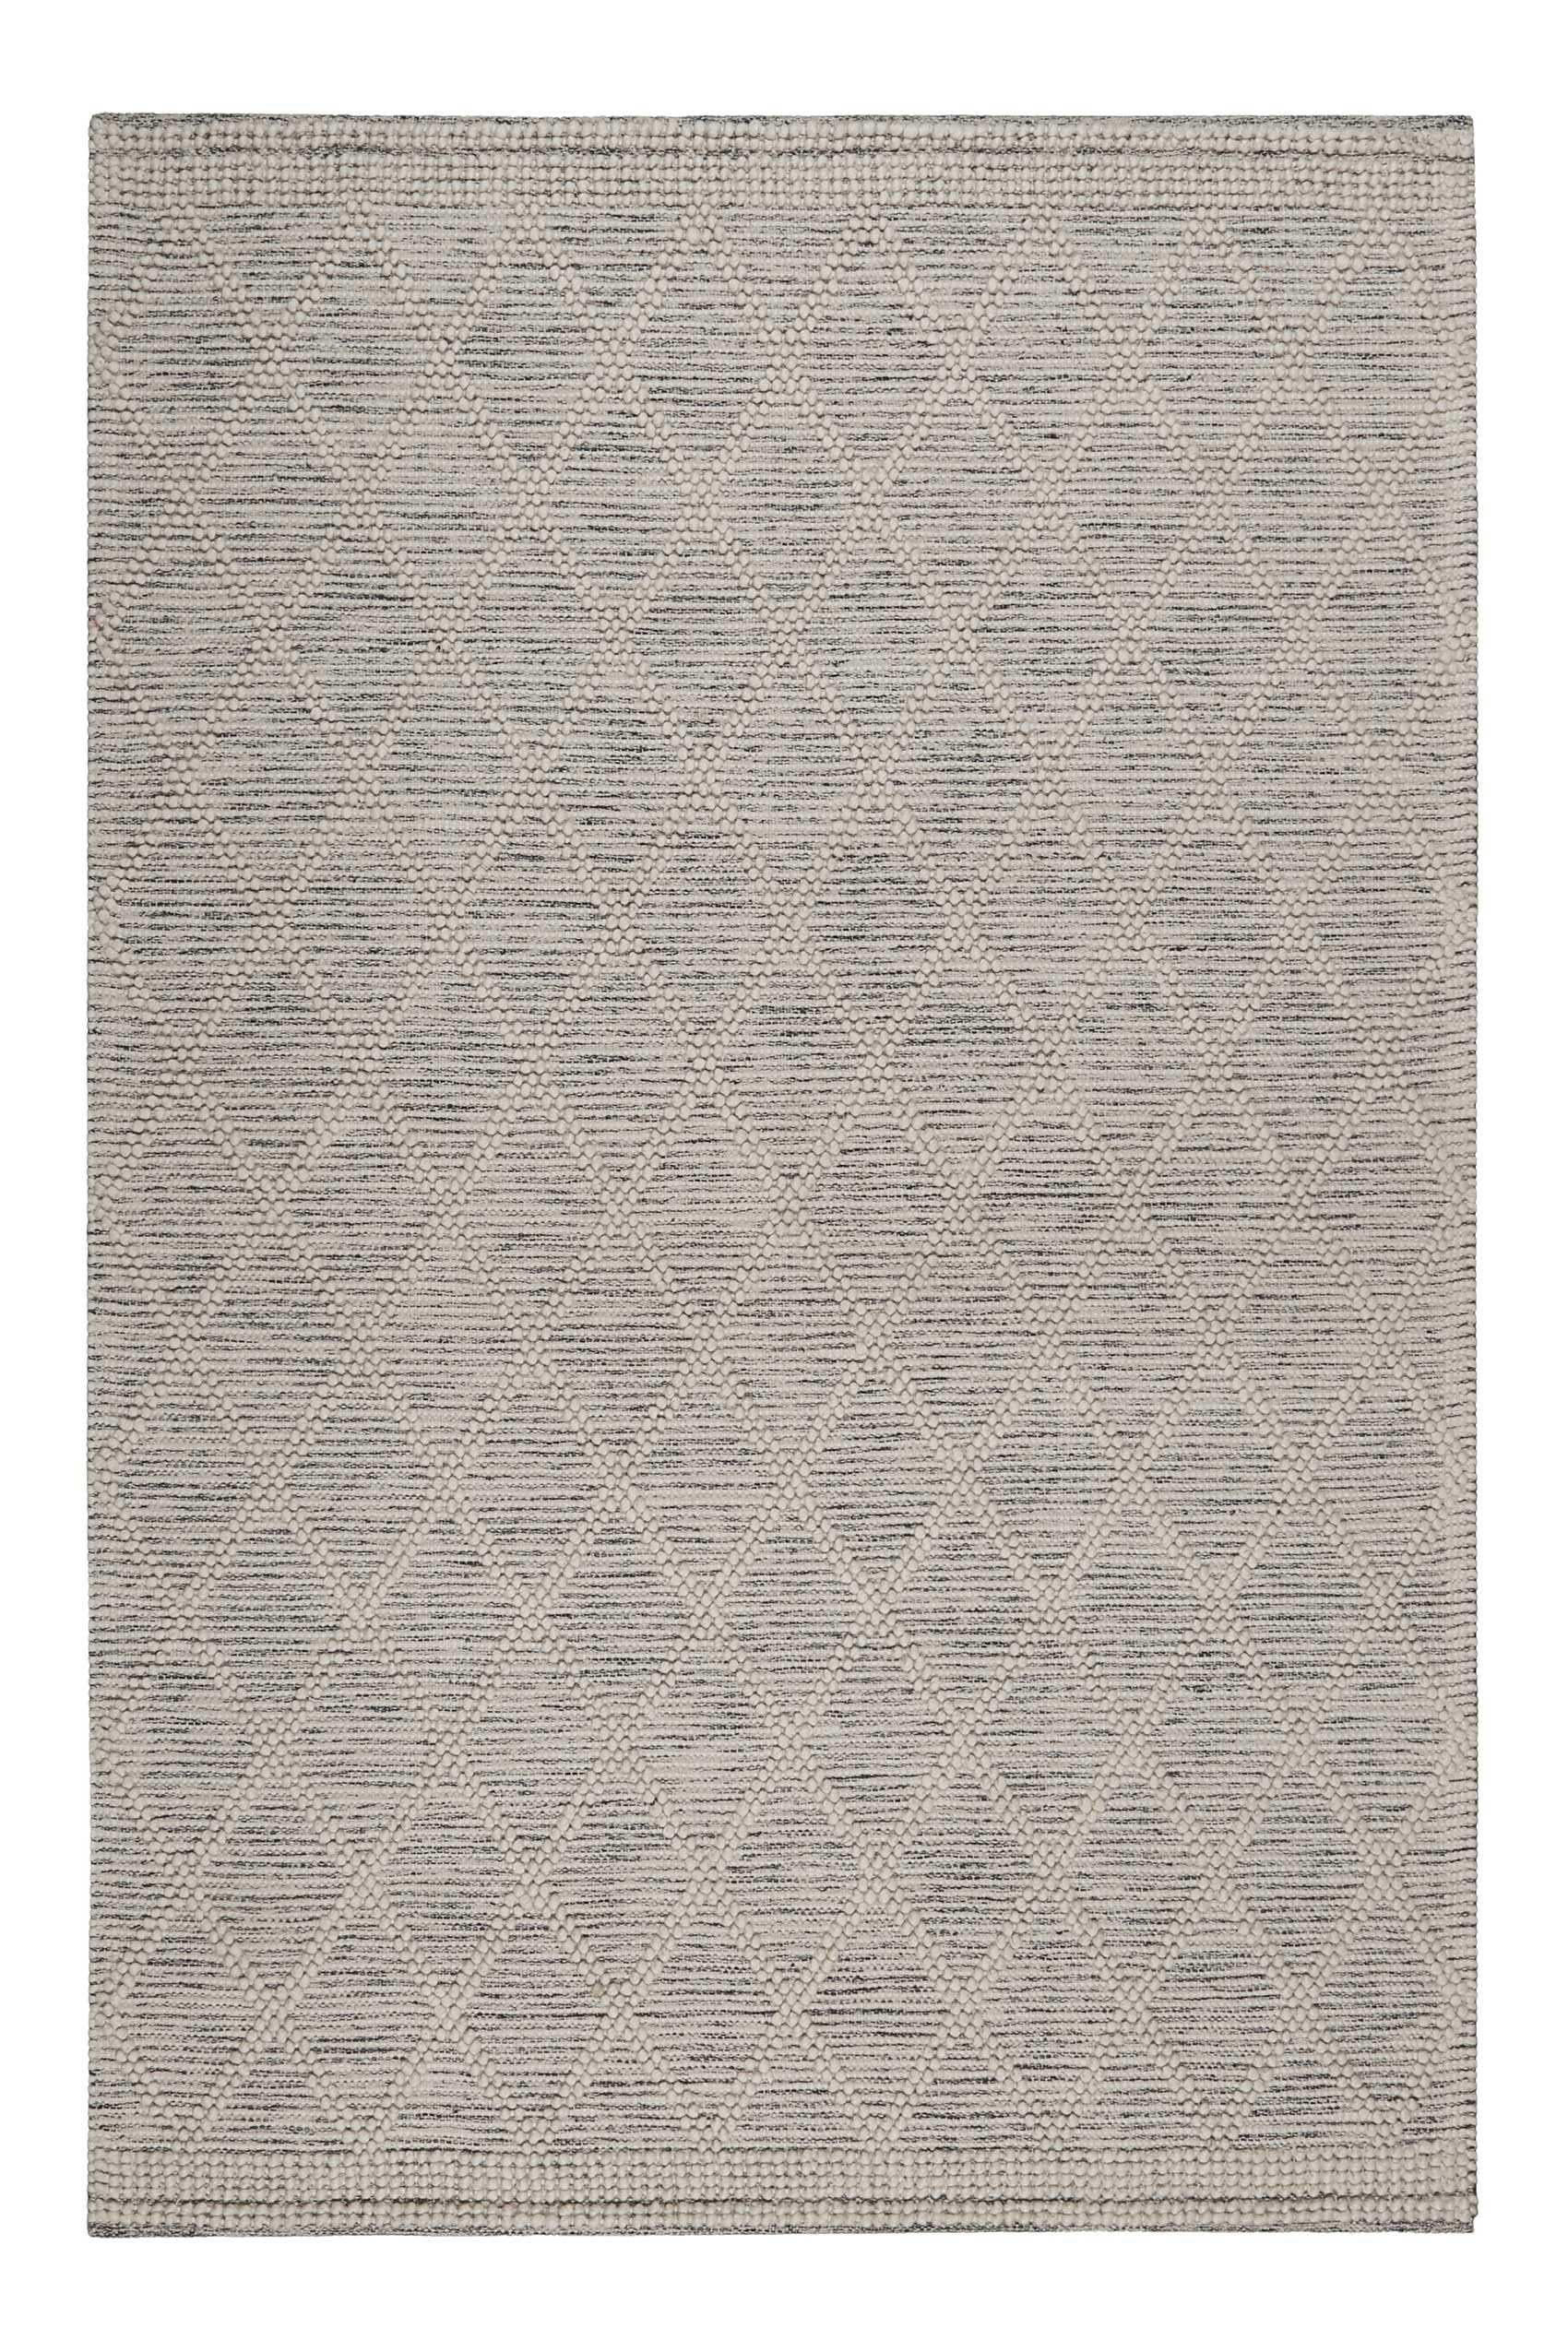 Wecon Home Esprit Handgewebter Teppich – Aus Schurwolle im Scandi-Style für Eleganz und Gemütlichkeit - Amy (140 x 200 cm, hellgrau)